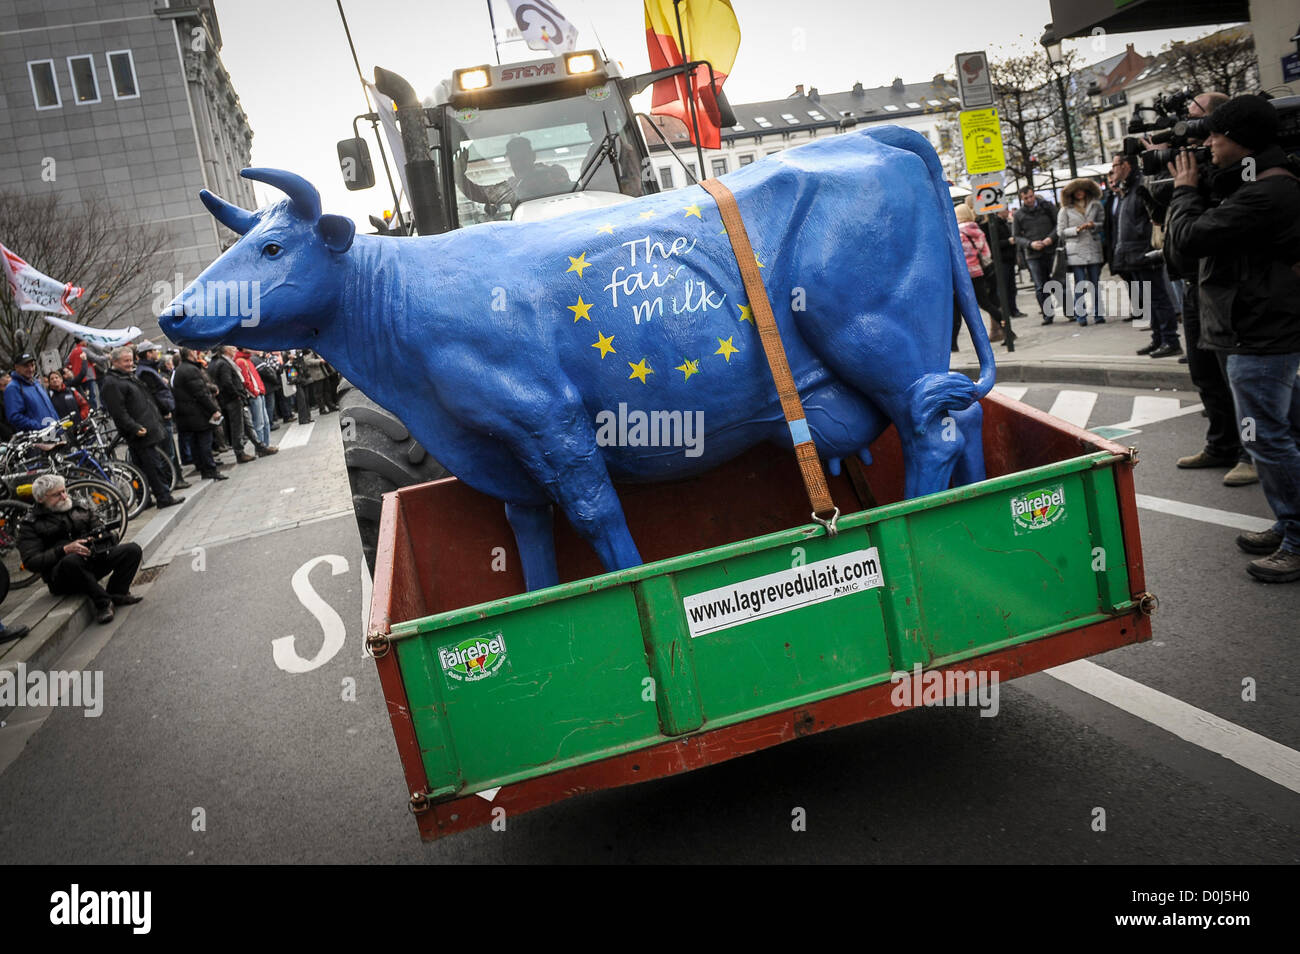 26. November 2012 - Brüssel, Belgien - Bauern gingen auf die Straße in Brüssel mit ihren Traktoren während einer Protestaktion über niedrige Milchpreise, die durch die Finanzkrise verursacht. Stockfoto